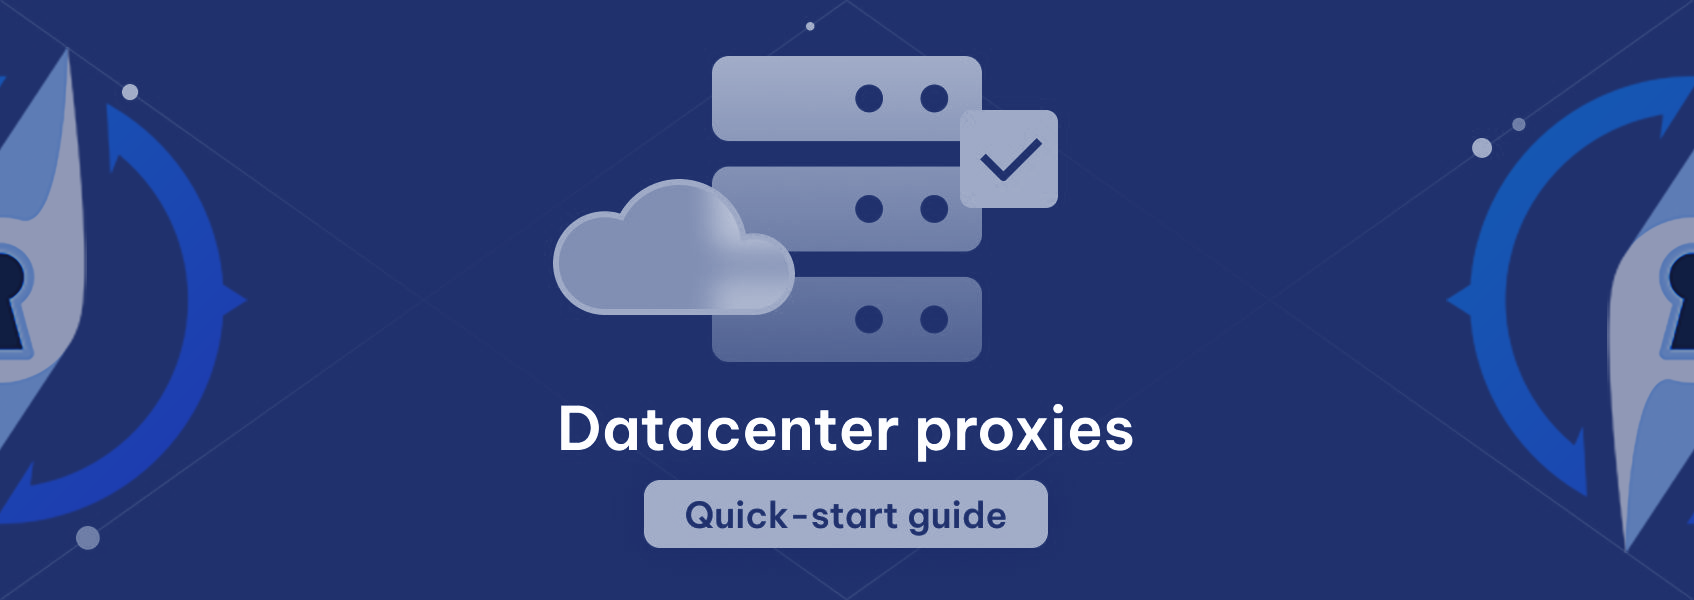 Una breve introduzione all'utilizzo dei proxy datacenter di ProxyCompass